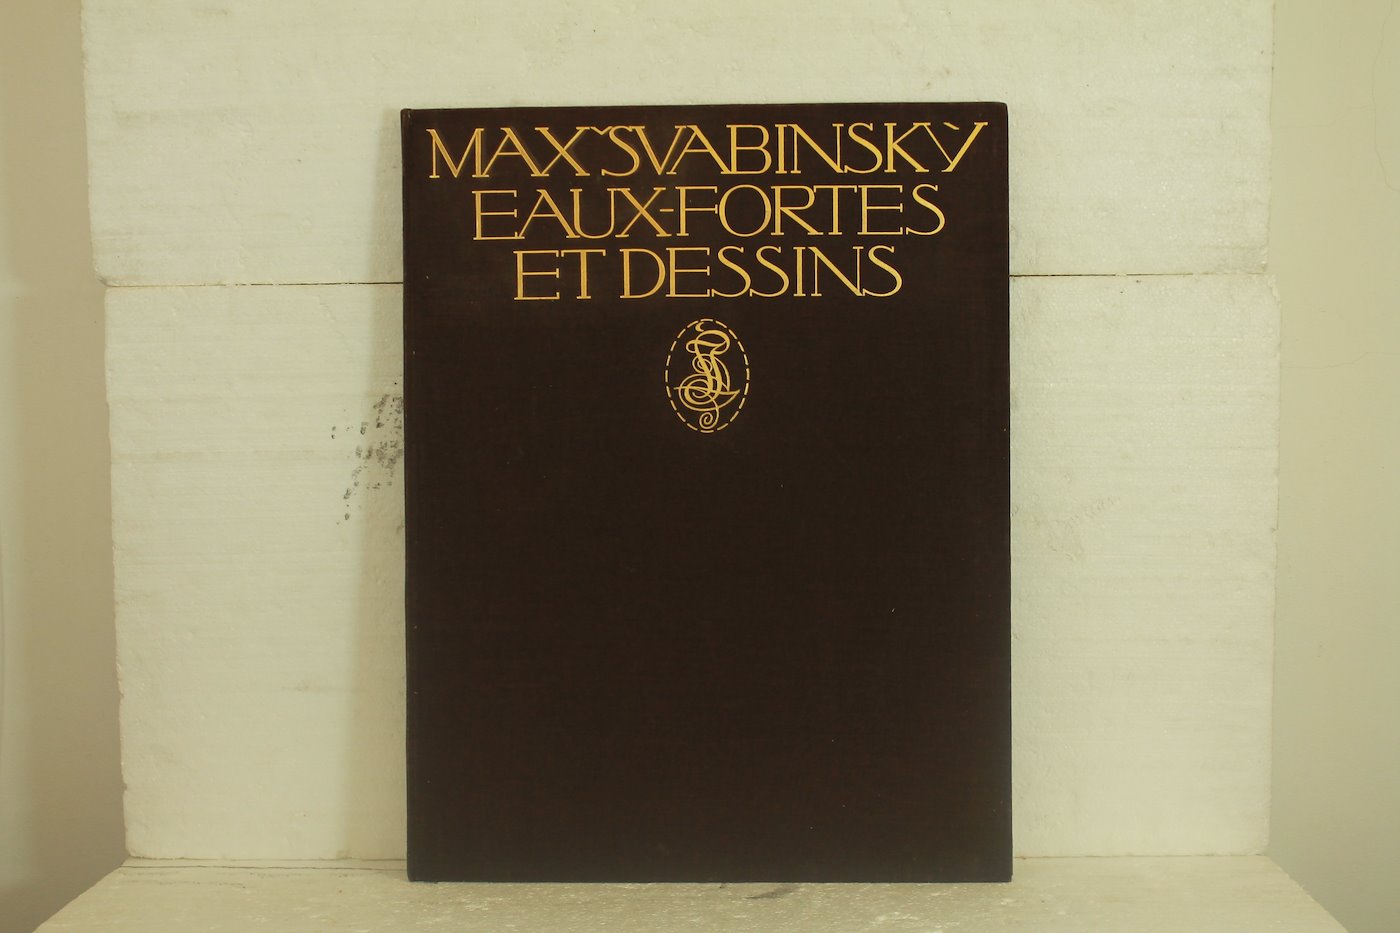 Max Švabinský - Eaux-Fortes et Dessins